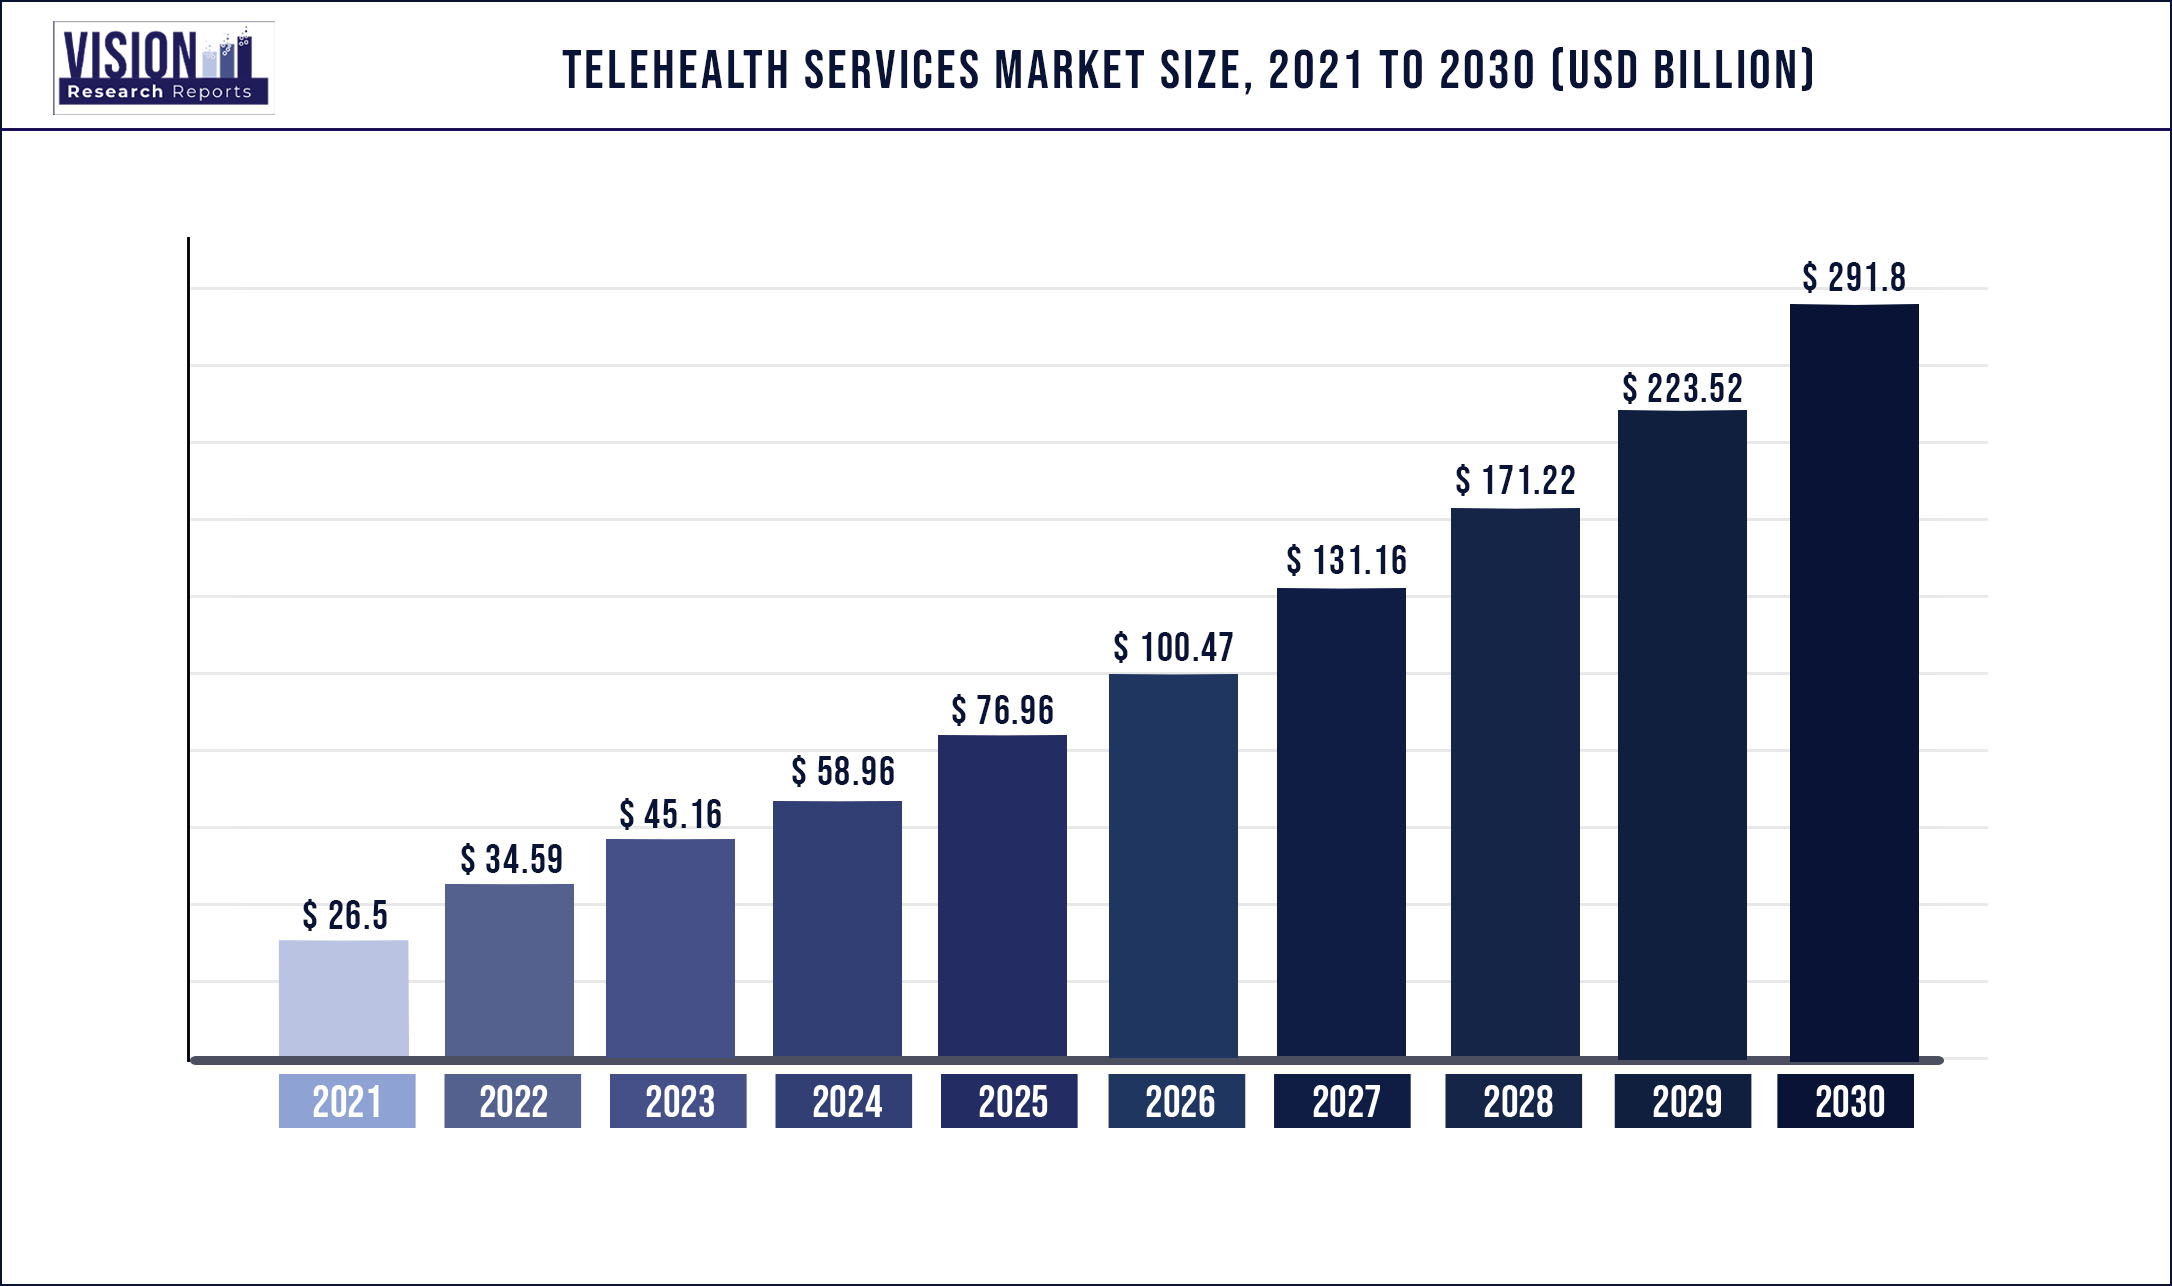 Telehealth Services Market Size 2021 to 2030